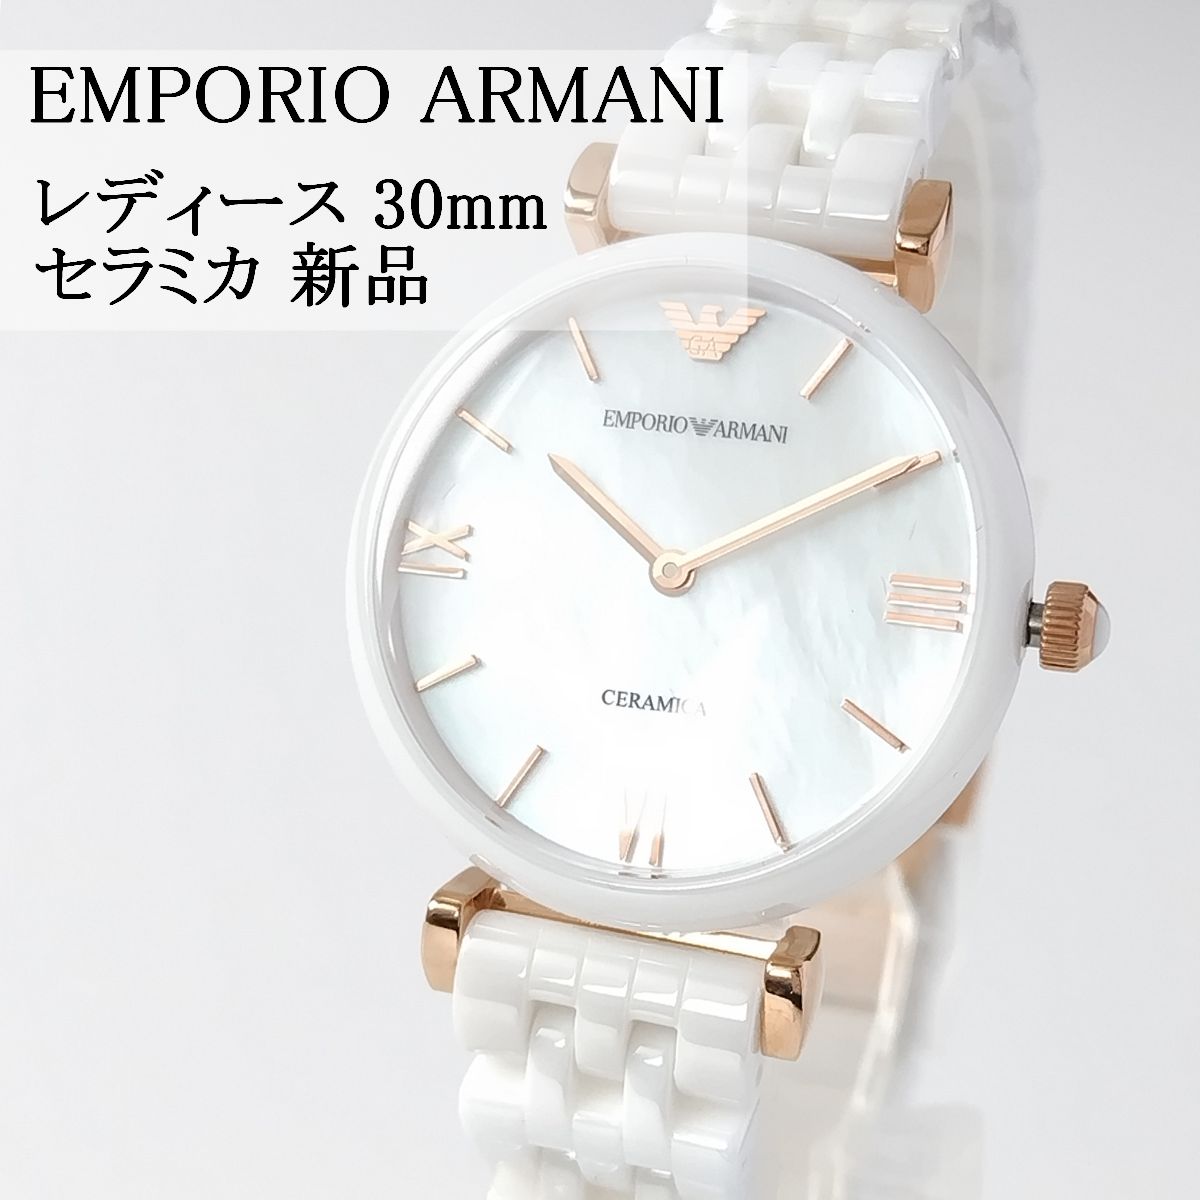 人気カラーの エンポリオアルマーニ エンポリオ アルマーニ ARMANI 腕時計 メンズ Amazon.co.jp: メンズ ホワイトダイアル メンズ  EMPORIO セラミカ ホワイトダイアル セラミカ エンポリオアルマーニ クロノグラフ 腕時計 メンズ